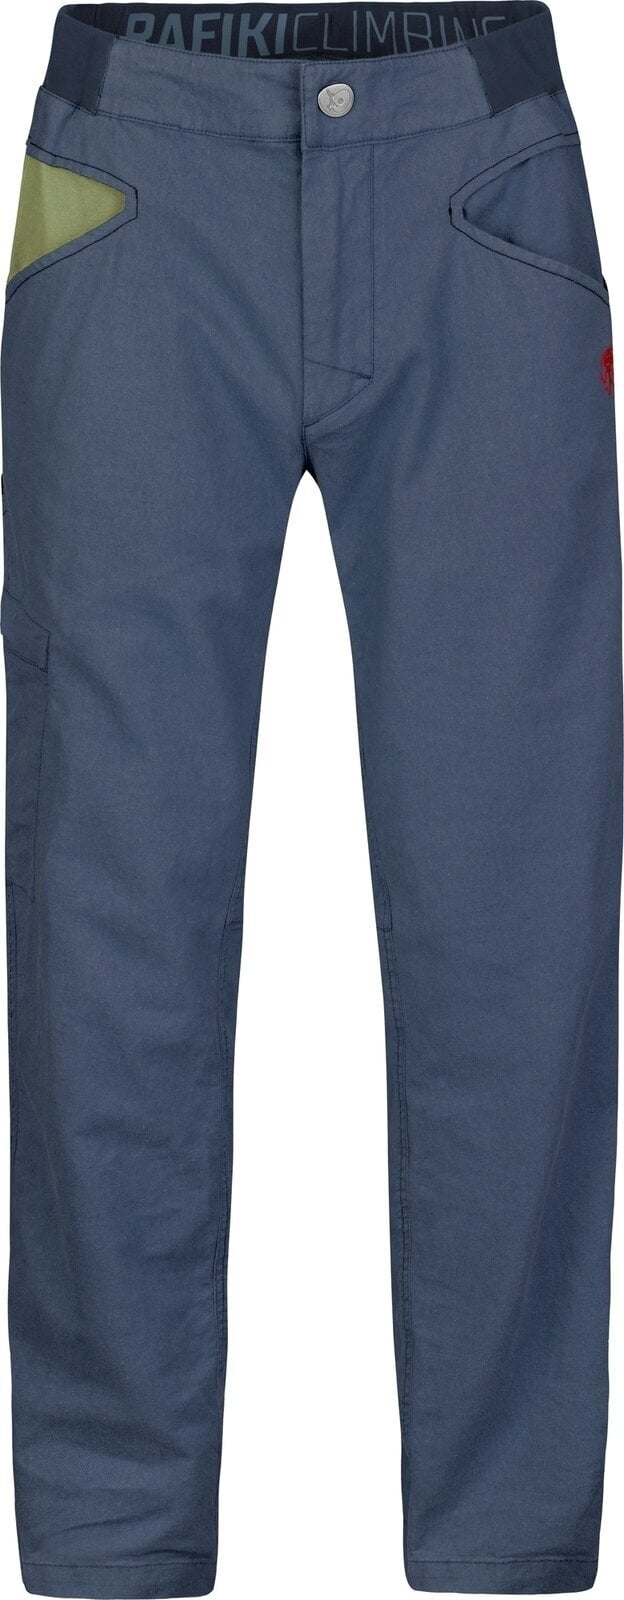 Outdoorové kalhoty Rafiki Grip Man Pants India Ink M Outdoorové kalhoty